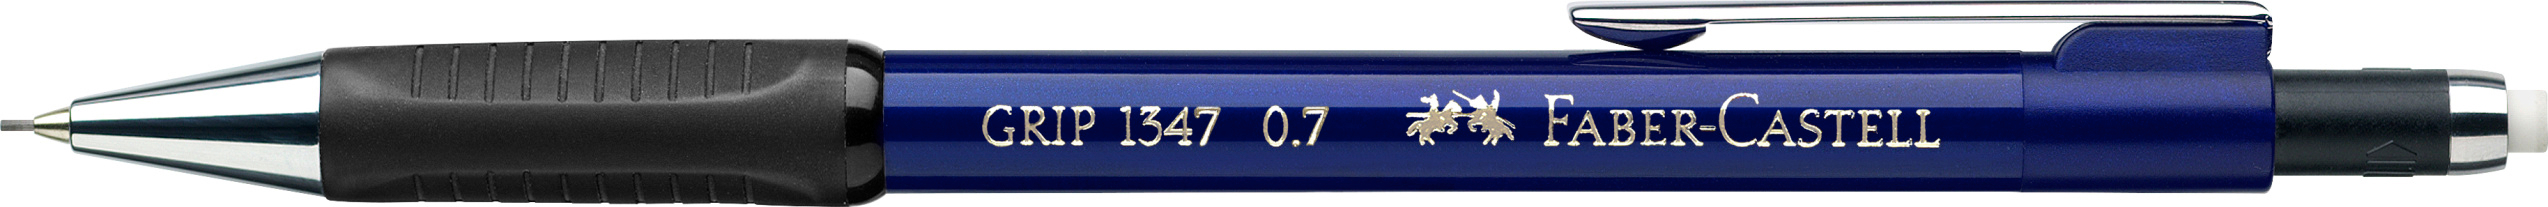 FABER-CASTELL Porte-mine GRIP 1347 134751 bleu, avec gomme 0.7mm bleu, avec gomme 0.7mm